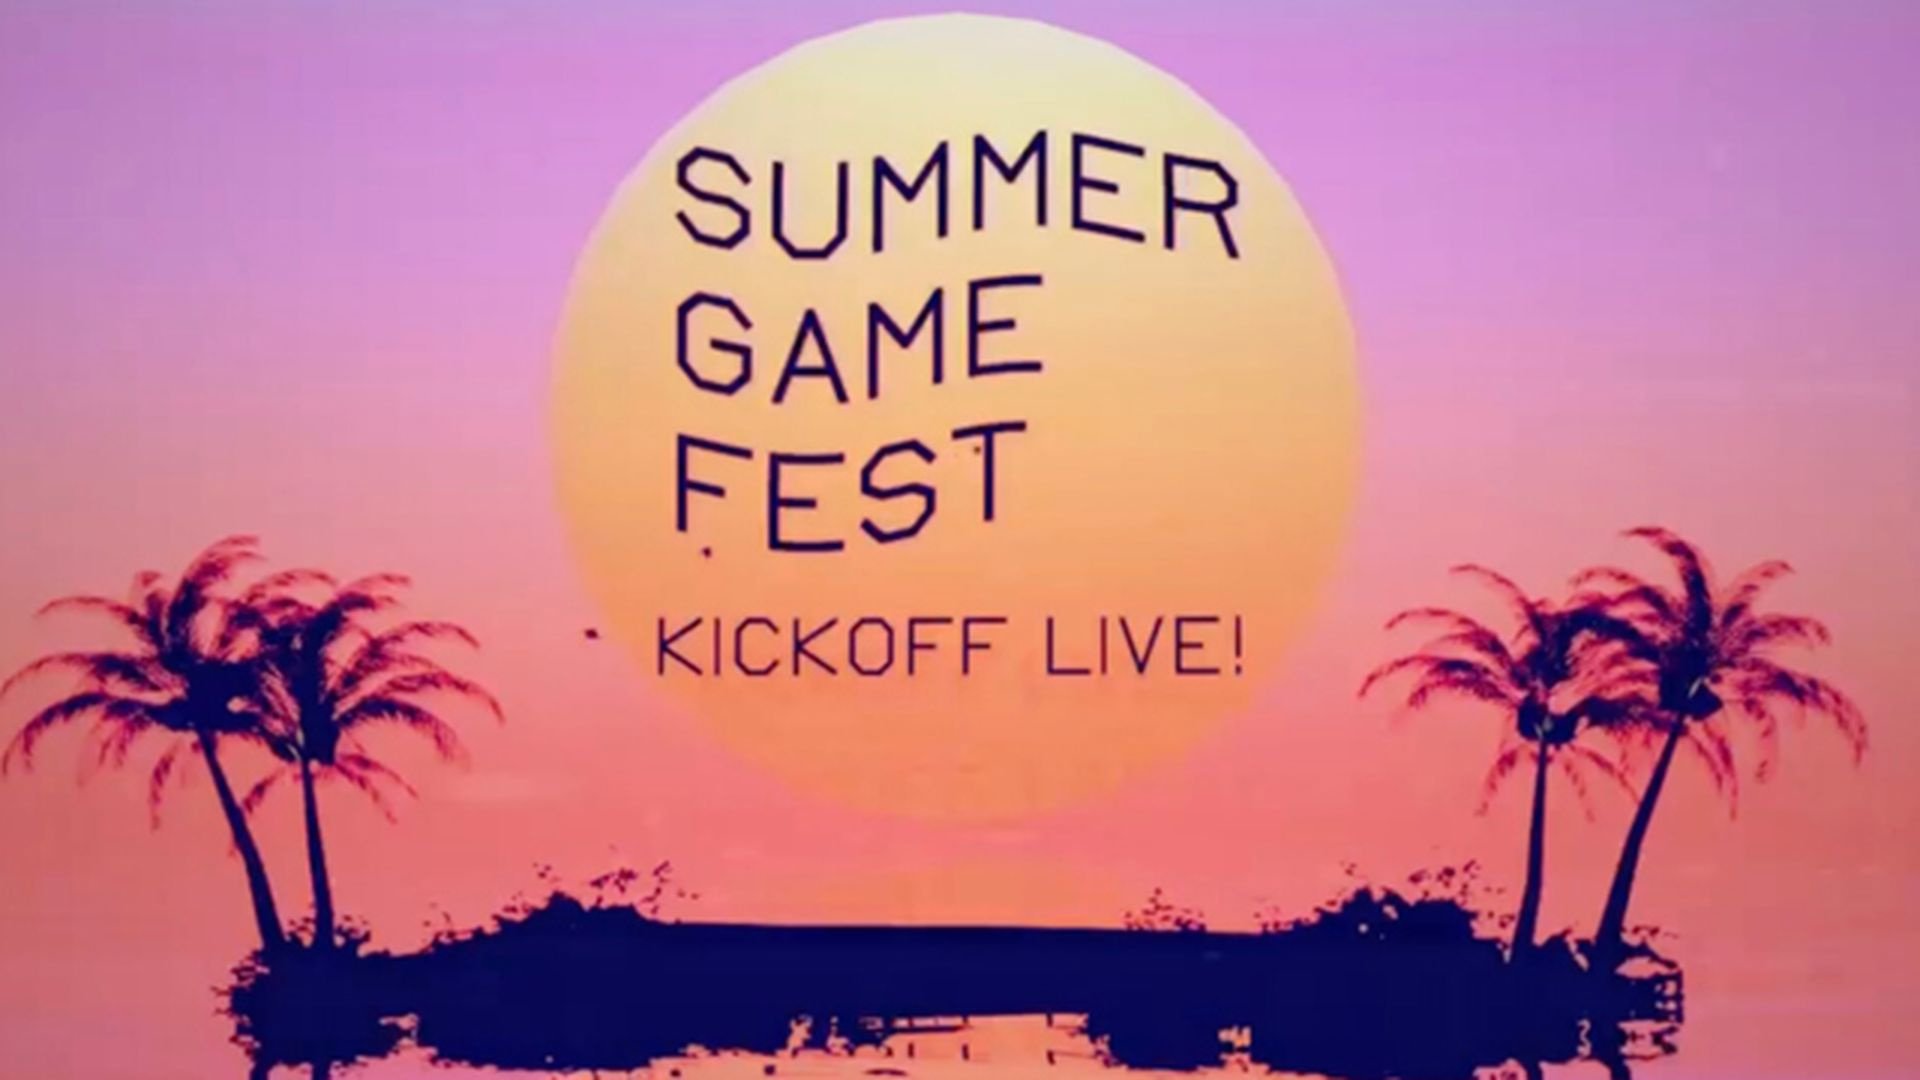 بازی جدید استودیو Gearbox در رویداد Summer Game Fest رونمایی خواهد شد